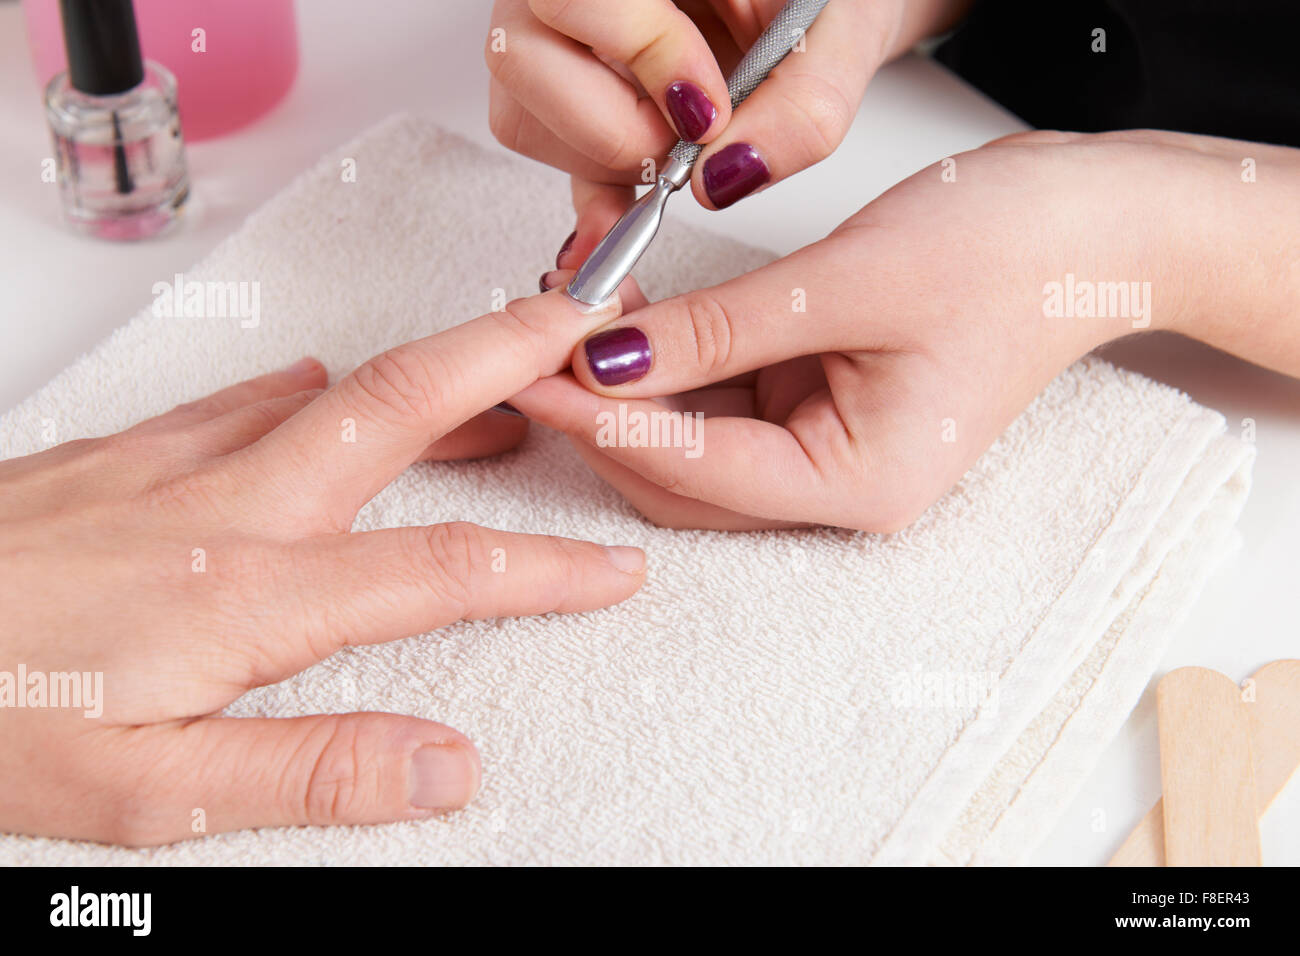 Woman Having Manicure At Beauty Salon Stock Photo